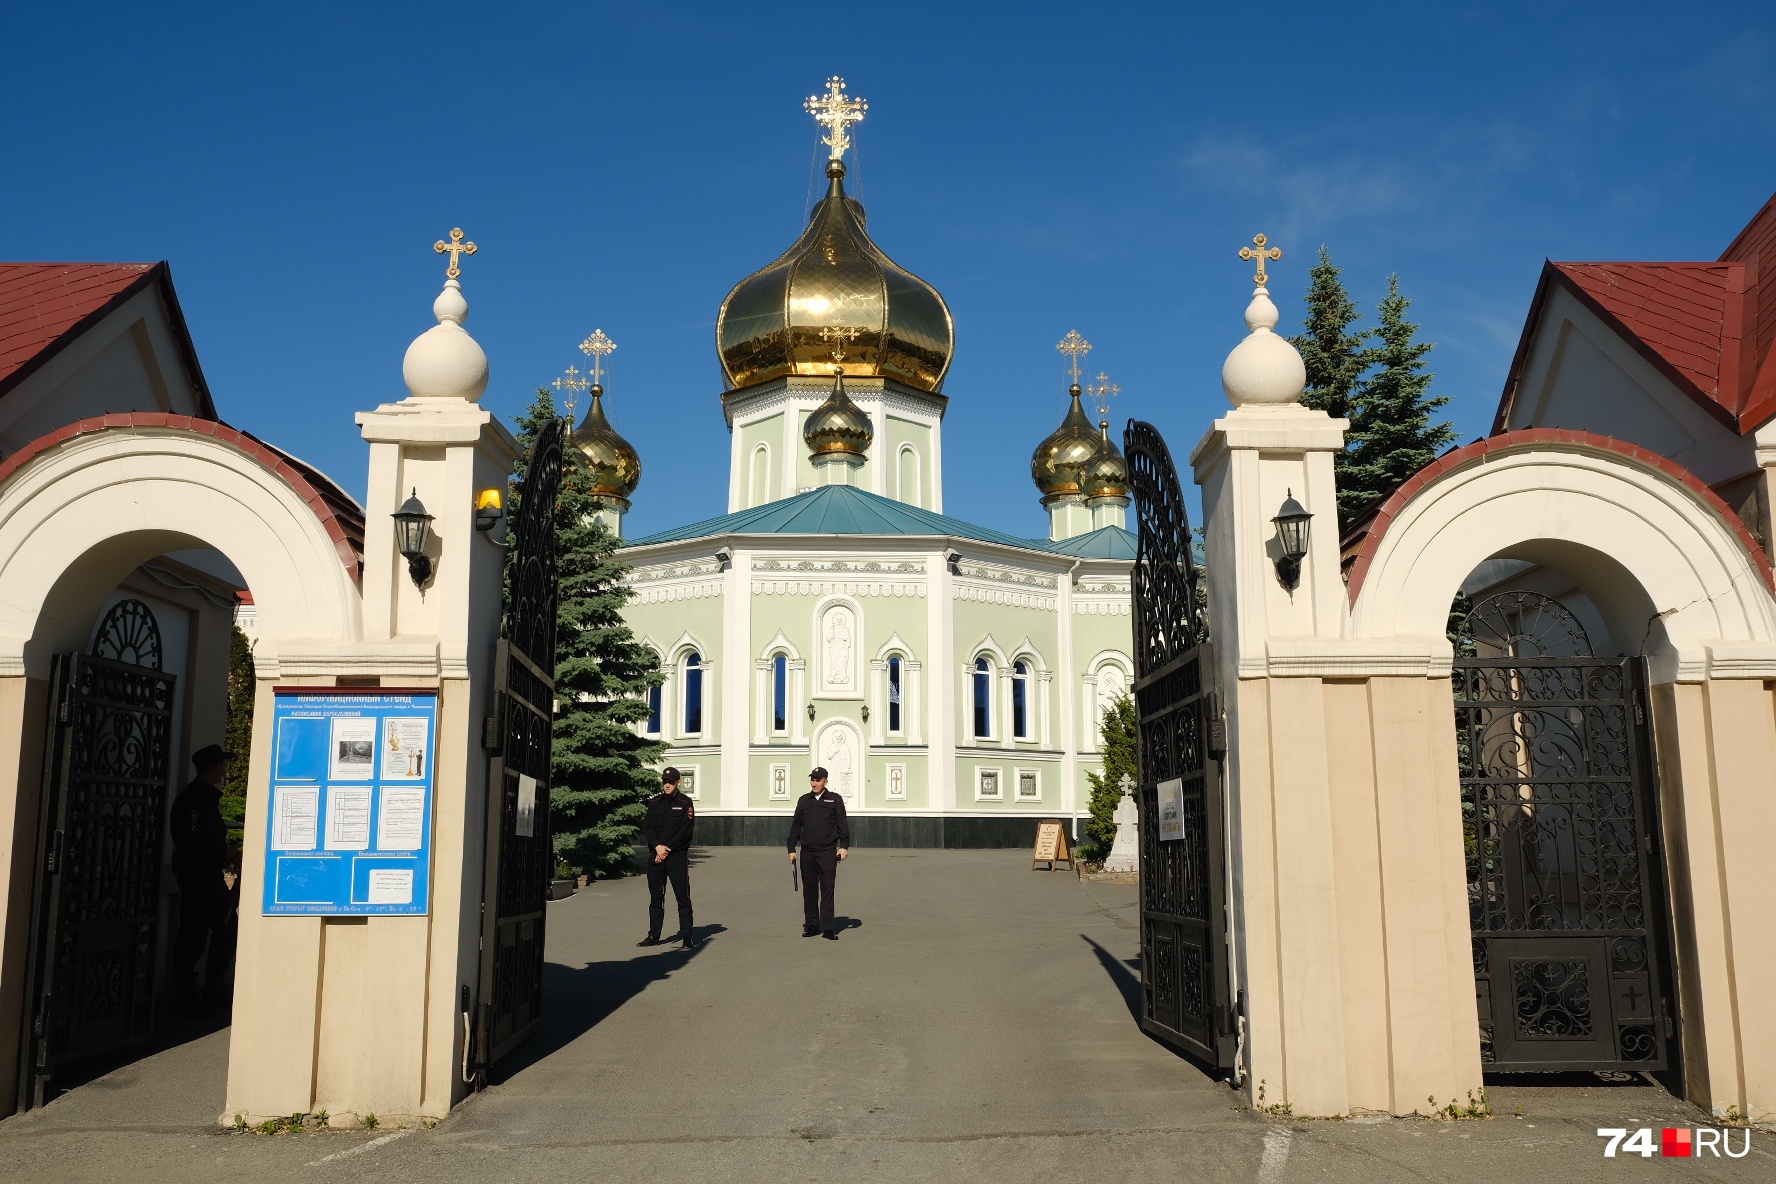 Планируется, что ковчег со святыми мощами побывает в 50 епархиях Русской православной церкви, протяженность маршрута составит около 30 тысяч километров